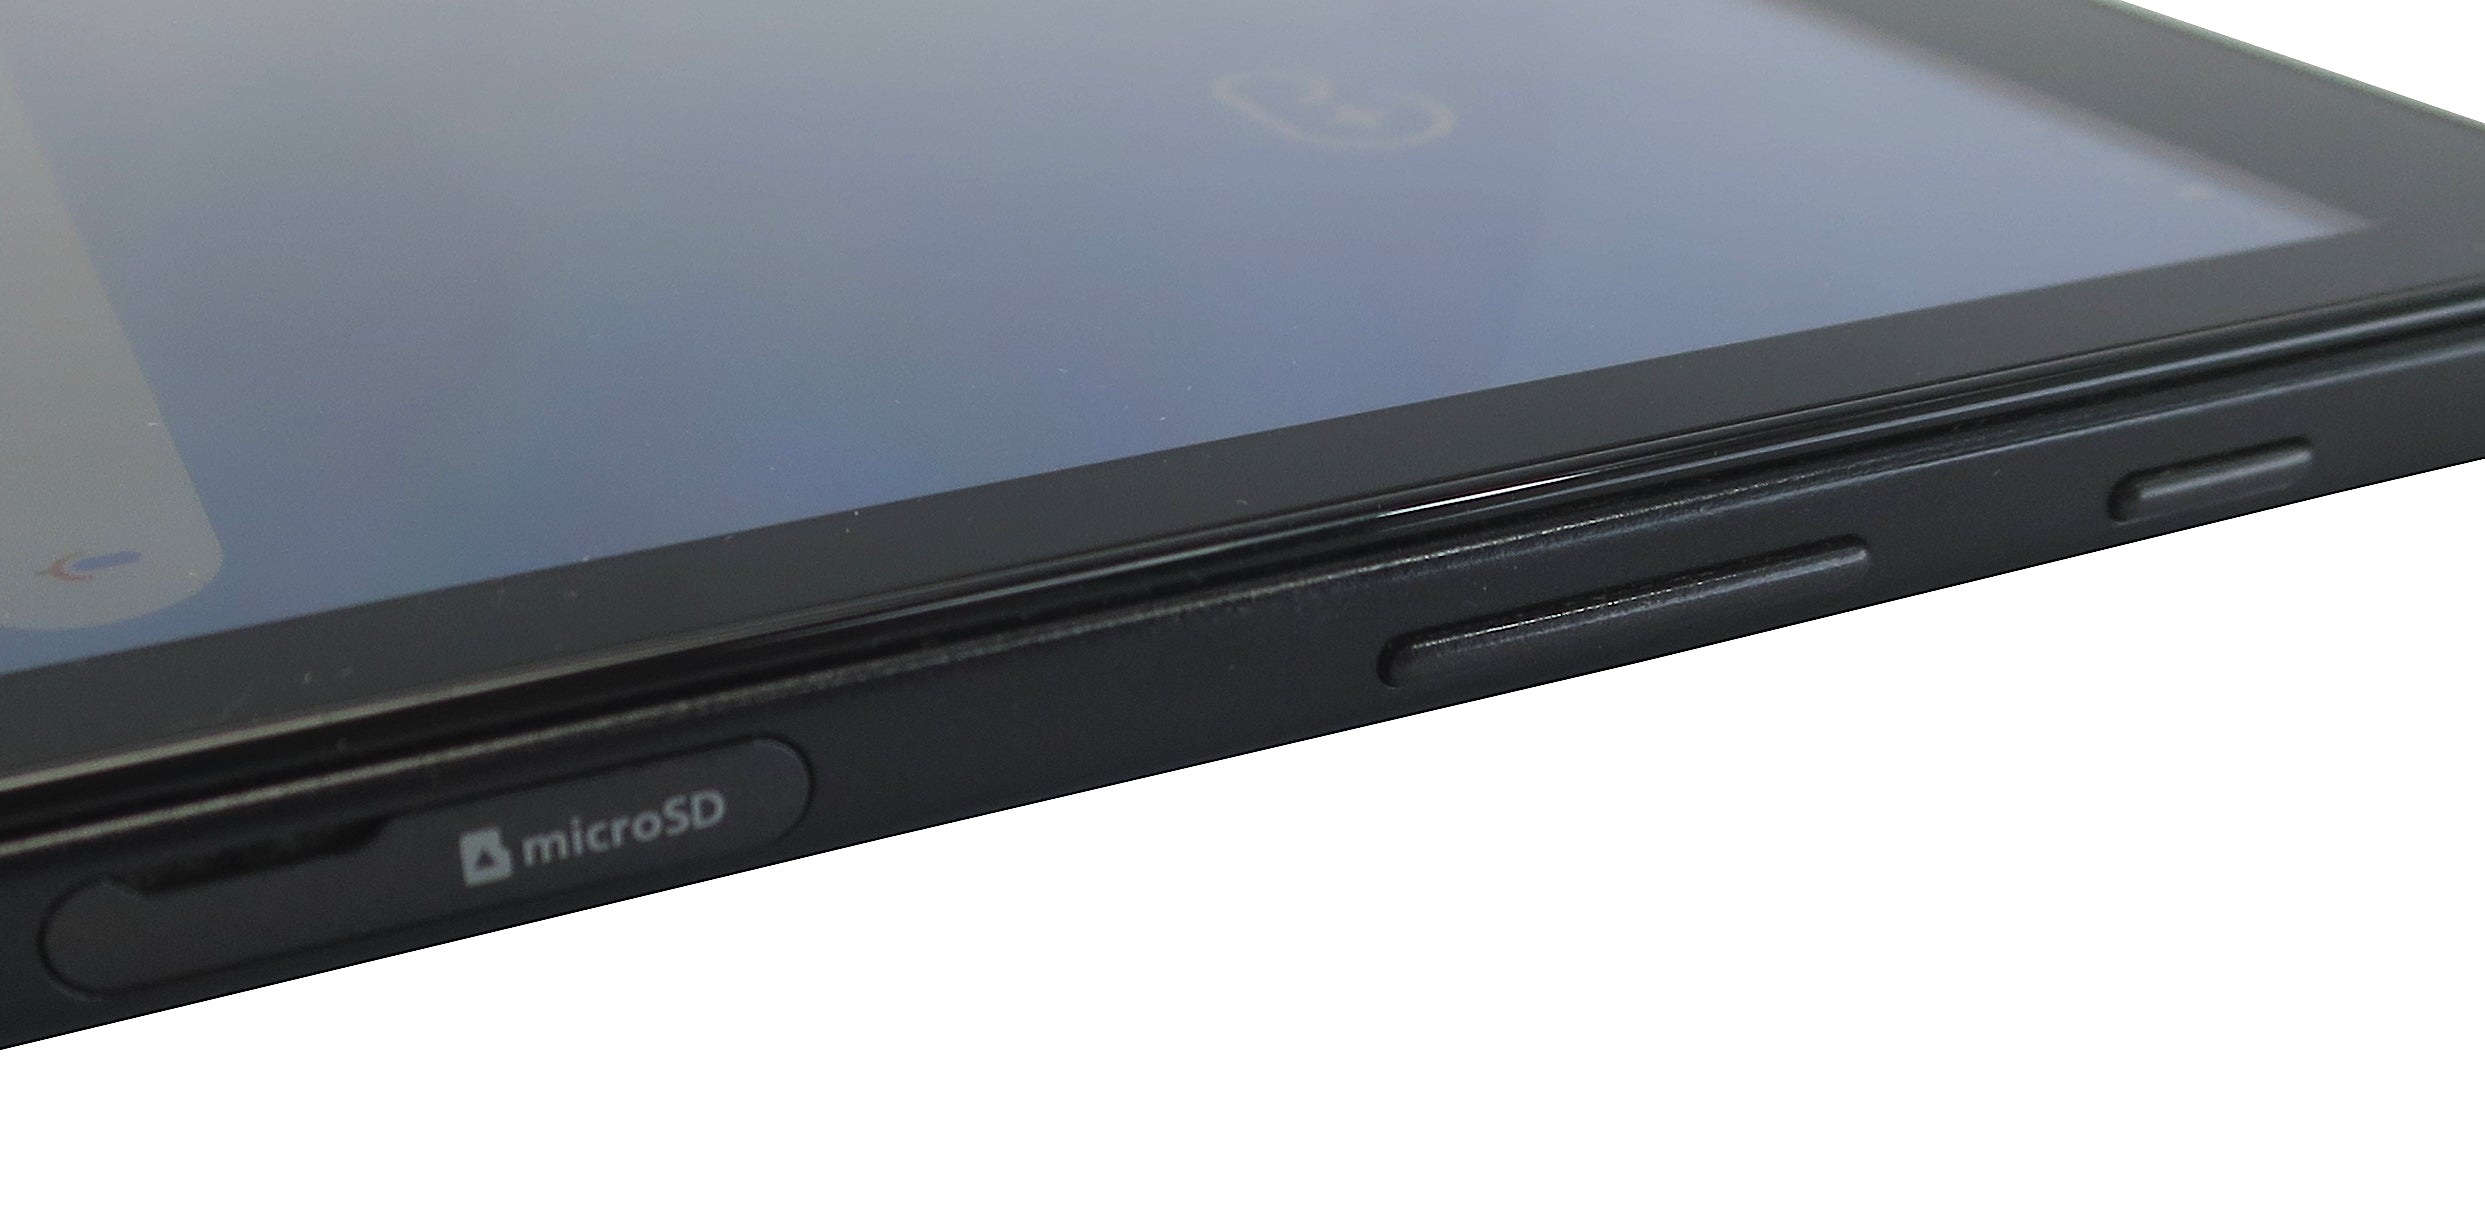 Samsung Galaxy Tab A 2016 Tablet, 10.1", 16GB, WiFi, Black, SM-T580